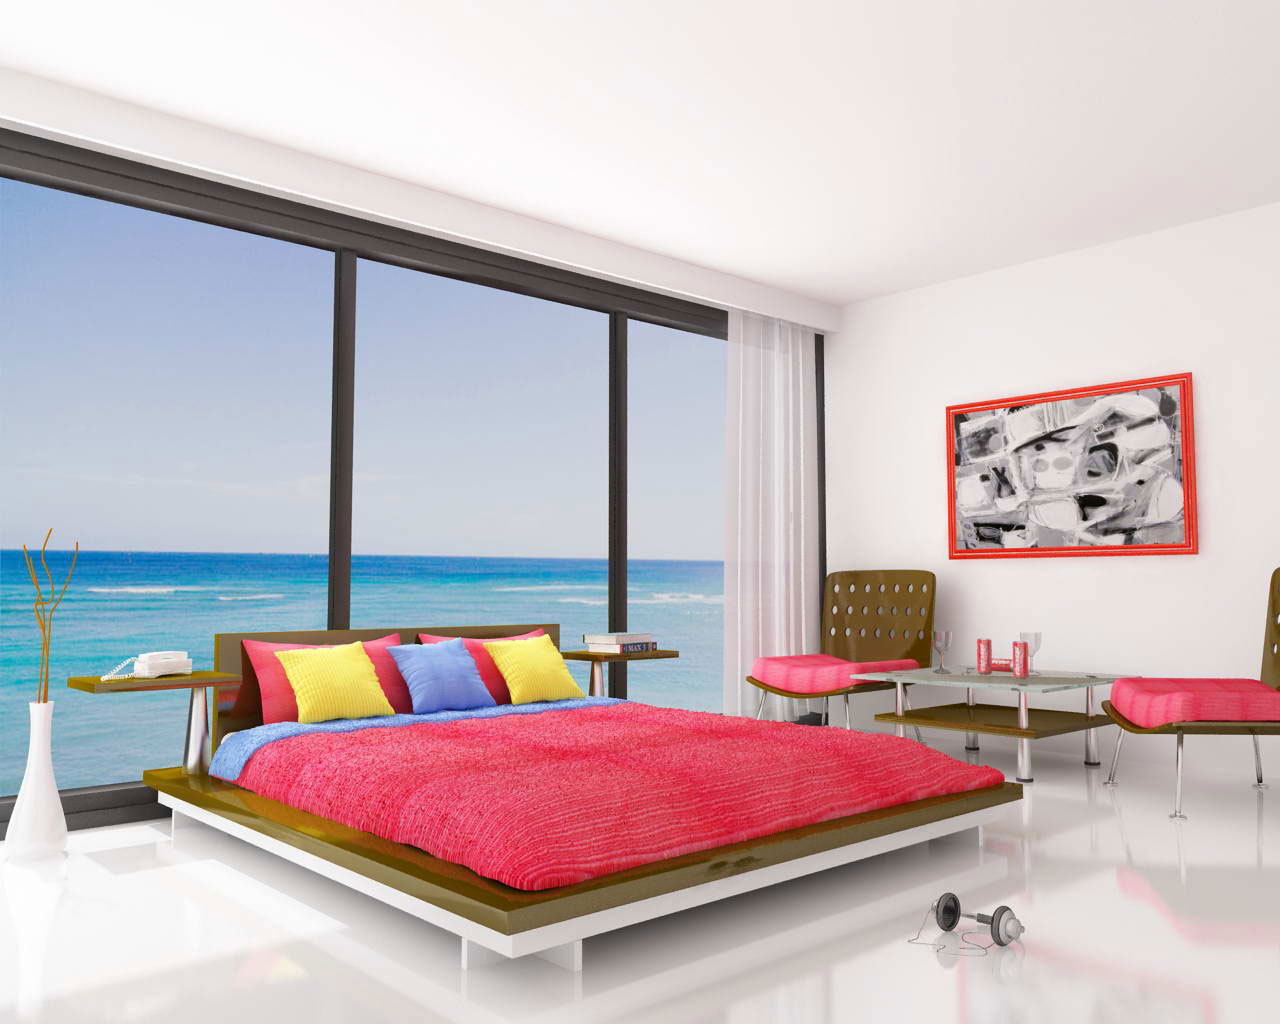 design interior trend bedroom design ocean